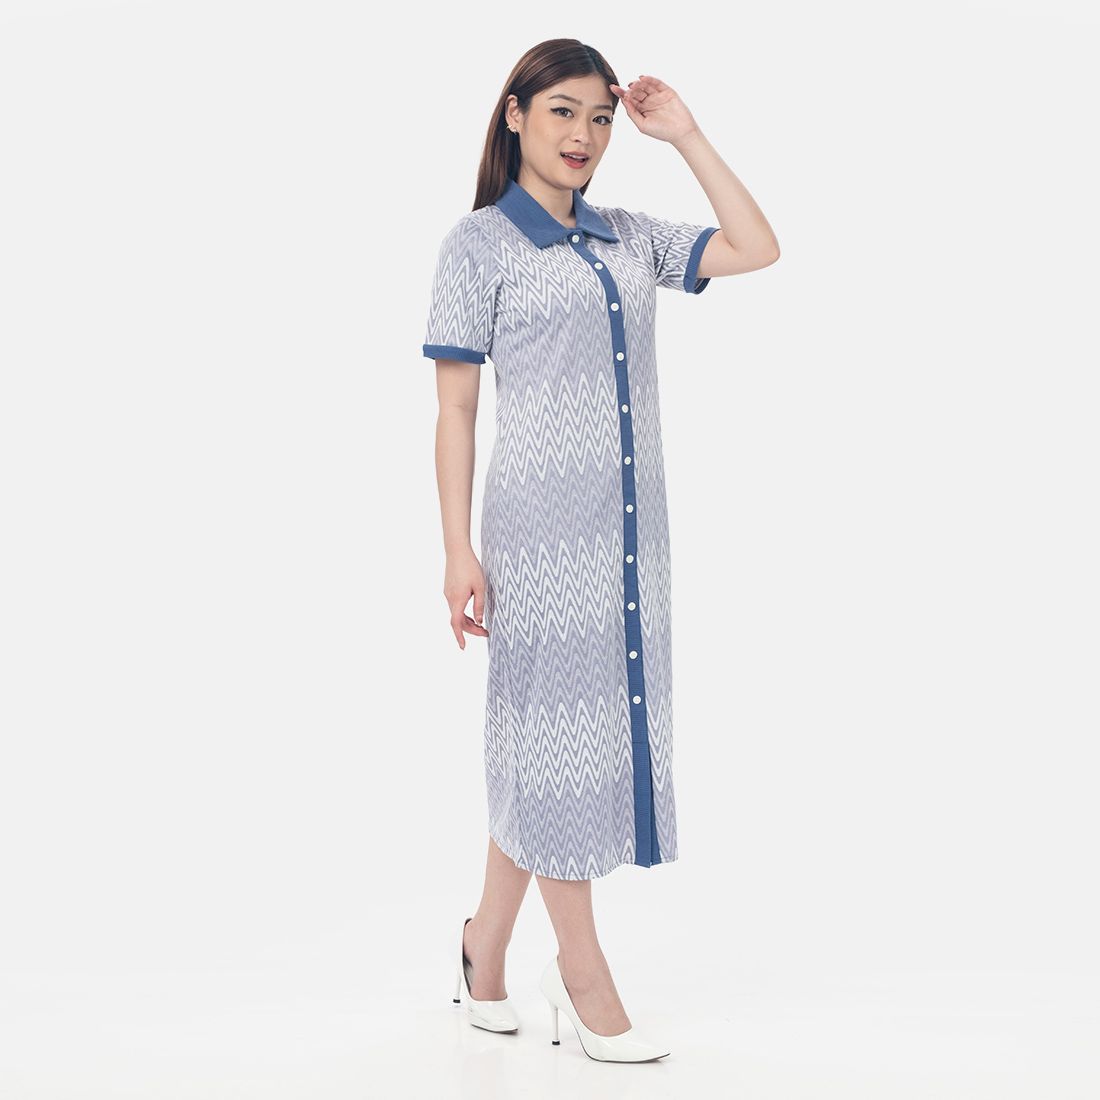 Tampil Smart Casual dengan MKy Clothing, Outfit Fashion Inspirasi Gaya Hidup Wanita Asia